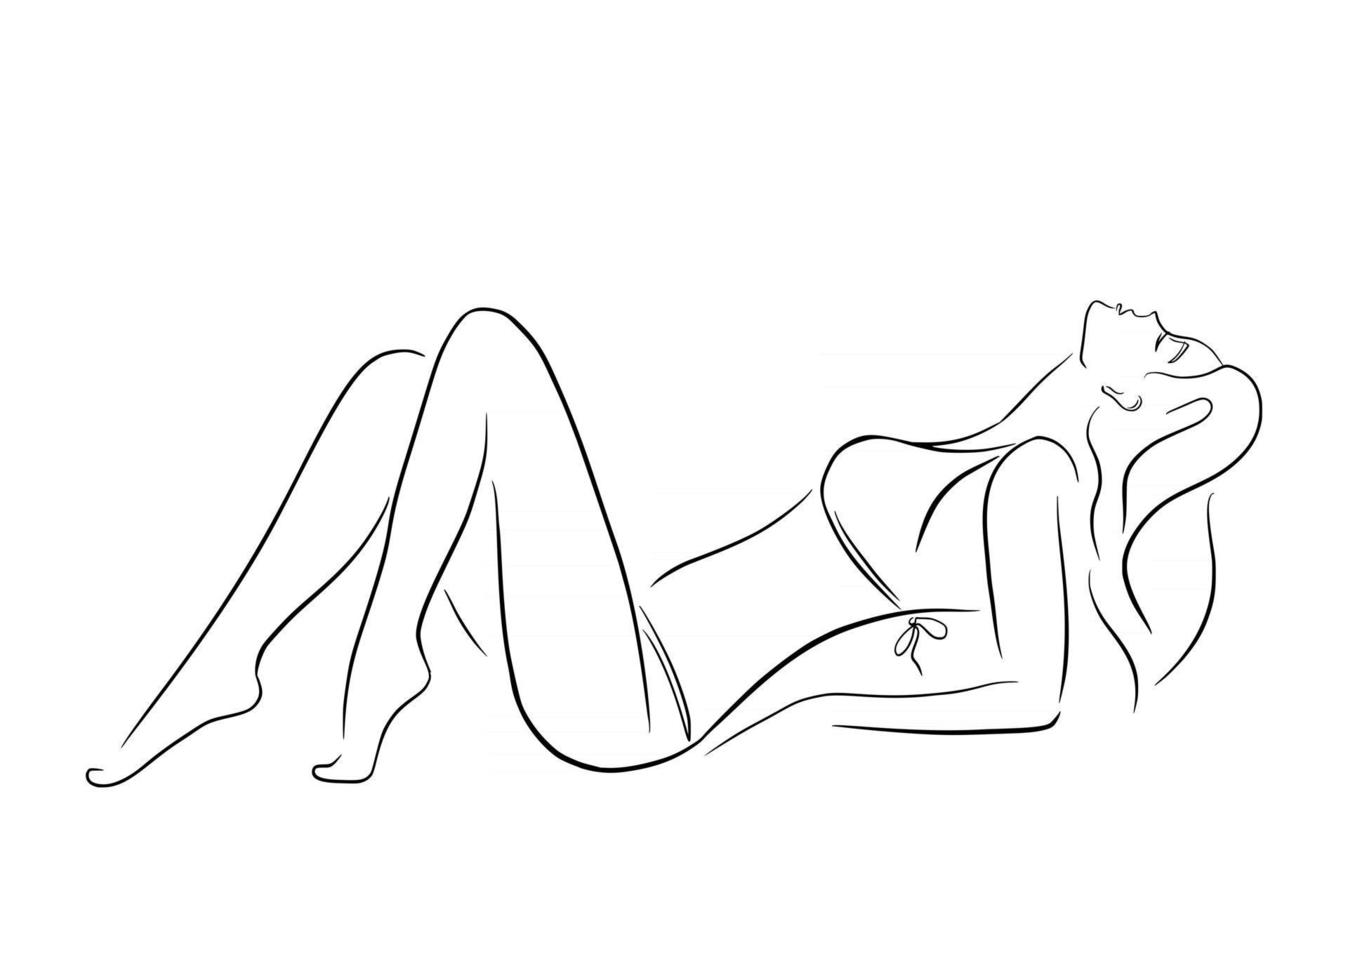 Lying Woman in Bikini in Minimalistic Black Lines Style vector